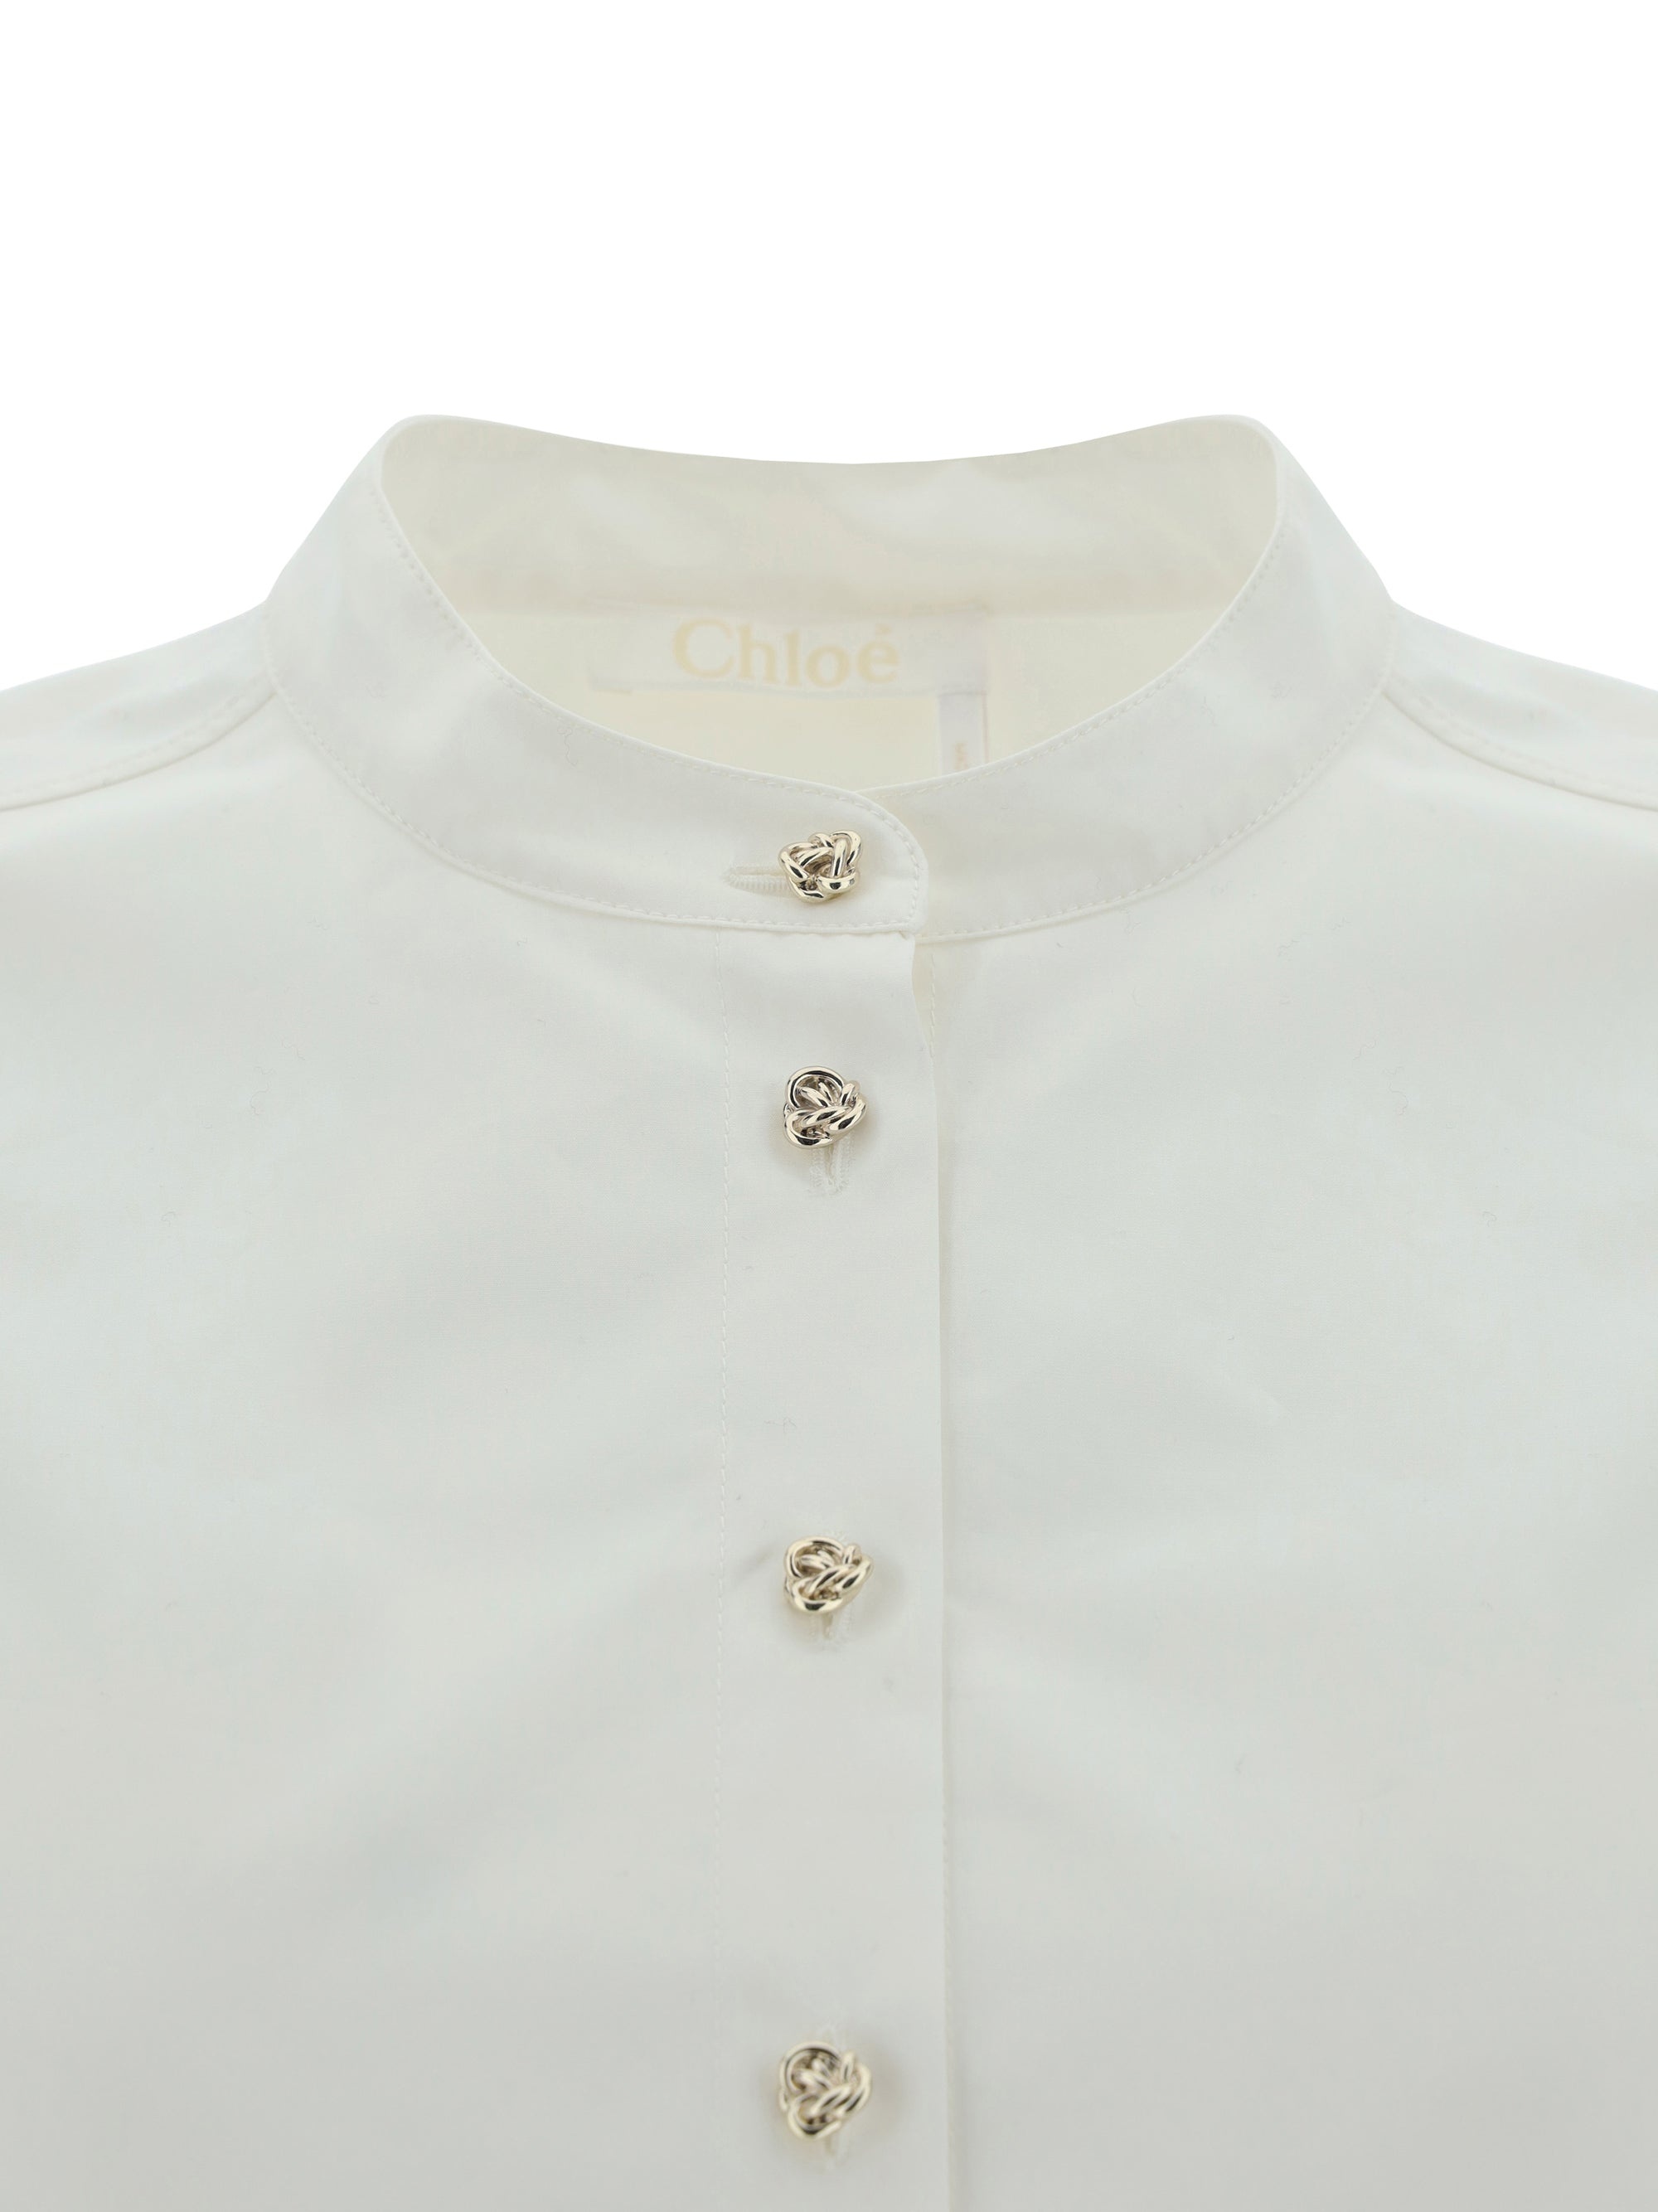 Chloé Women Blusa Shirt - 3